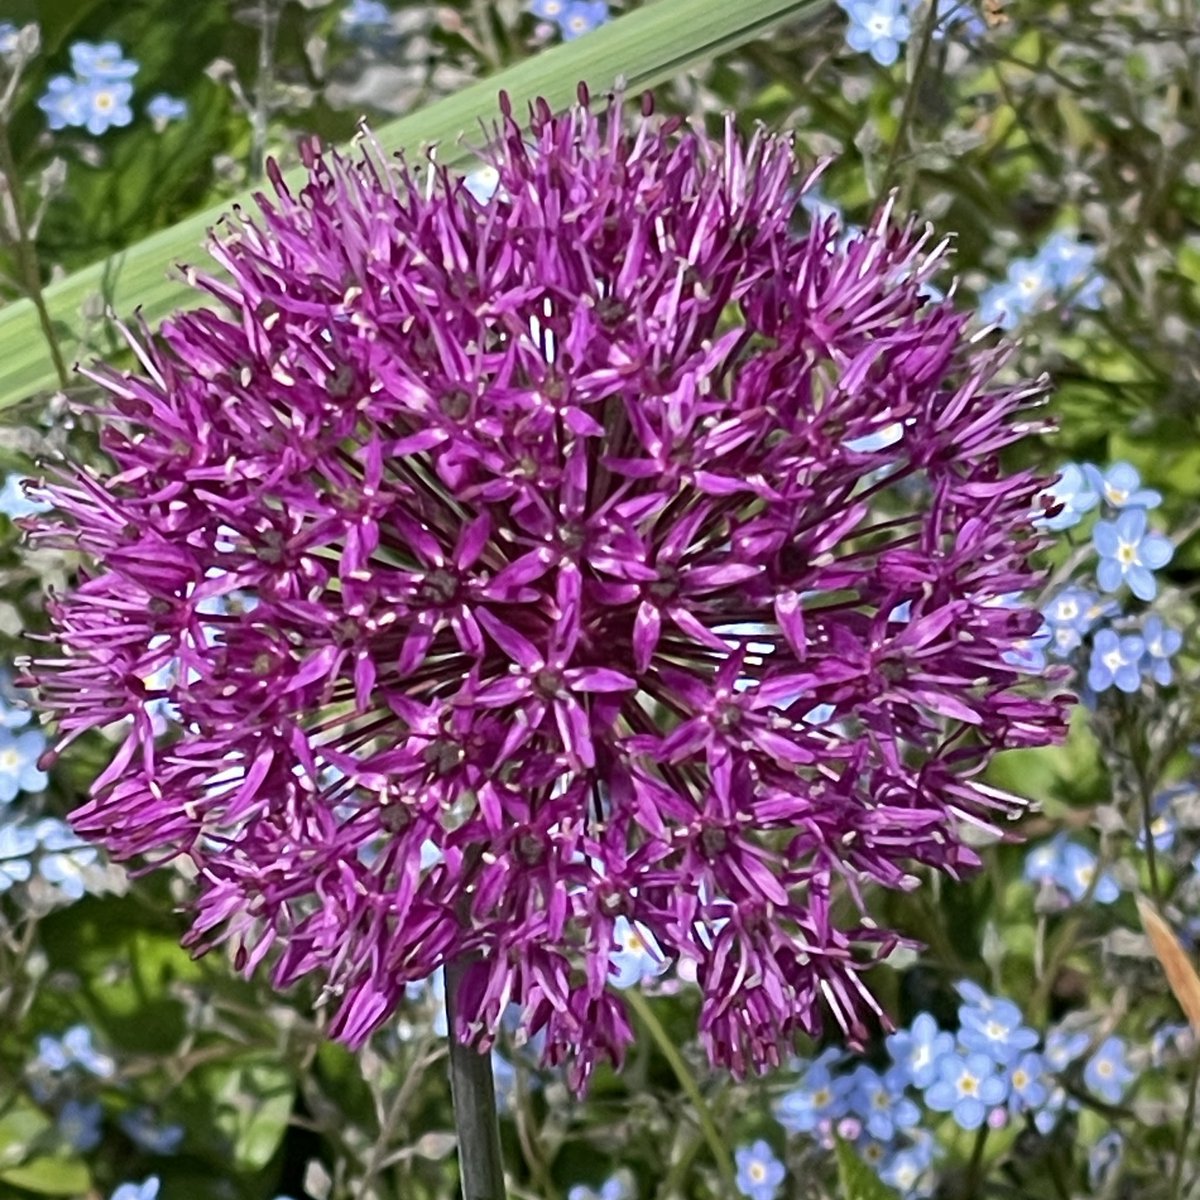 An allium in my Devon garden to brighten your Saturday morning #allium #flowers